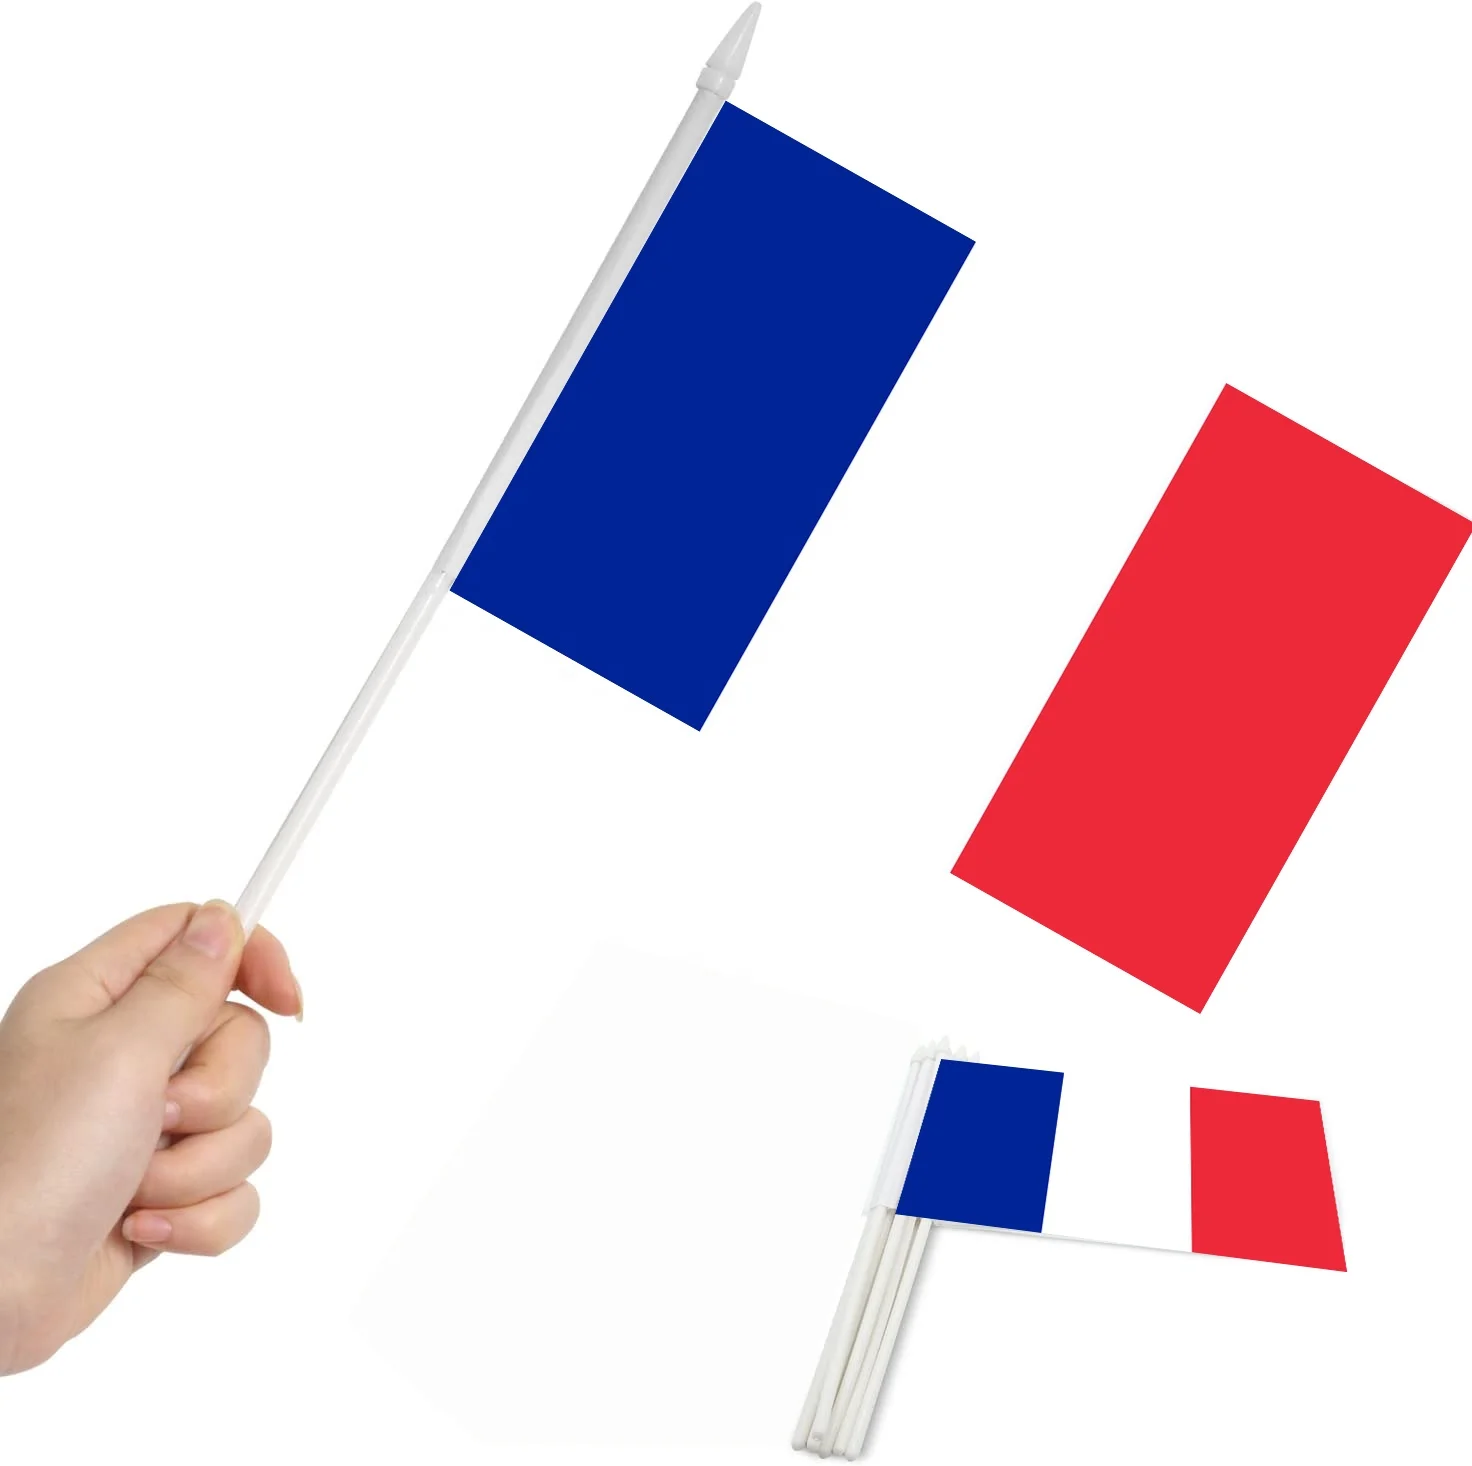 Cờ que Pháp lớn là một phụ kiện không thể thiếu cho những người yêu nước và đang muốn tạo sự kiện đặc biệt. Những cờ que lớn đầy màu sắc sẽ làm cho bất kỳ buổi tiệc hay sự kiện nào trở nên trang trọng và đáng nhớ hơn. Nhấp vào hình ảnh và sở hữu một cờ que Pháp lớn để tôn vinh đất nước.